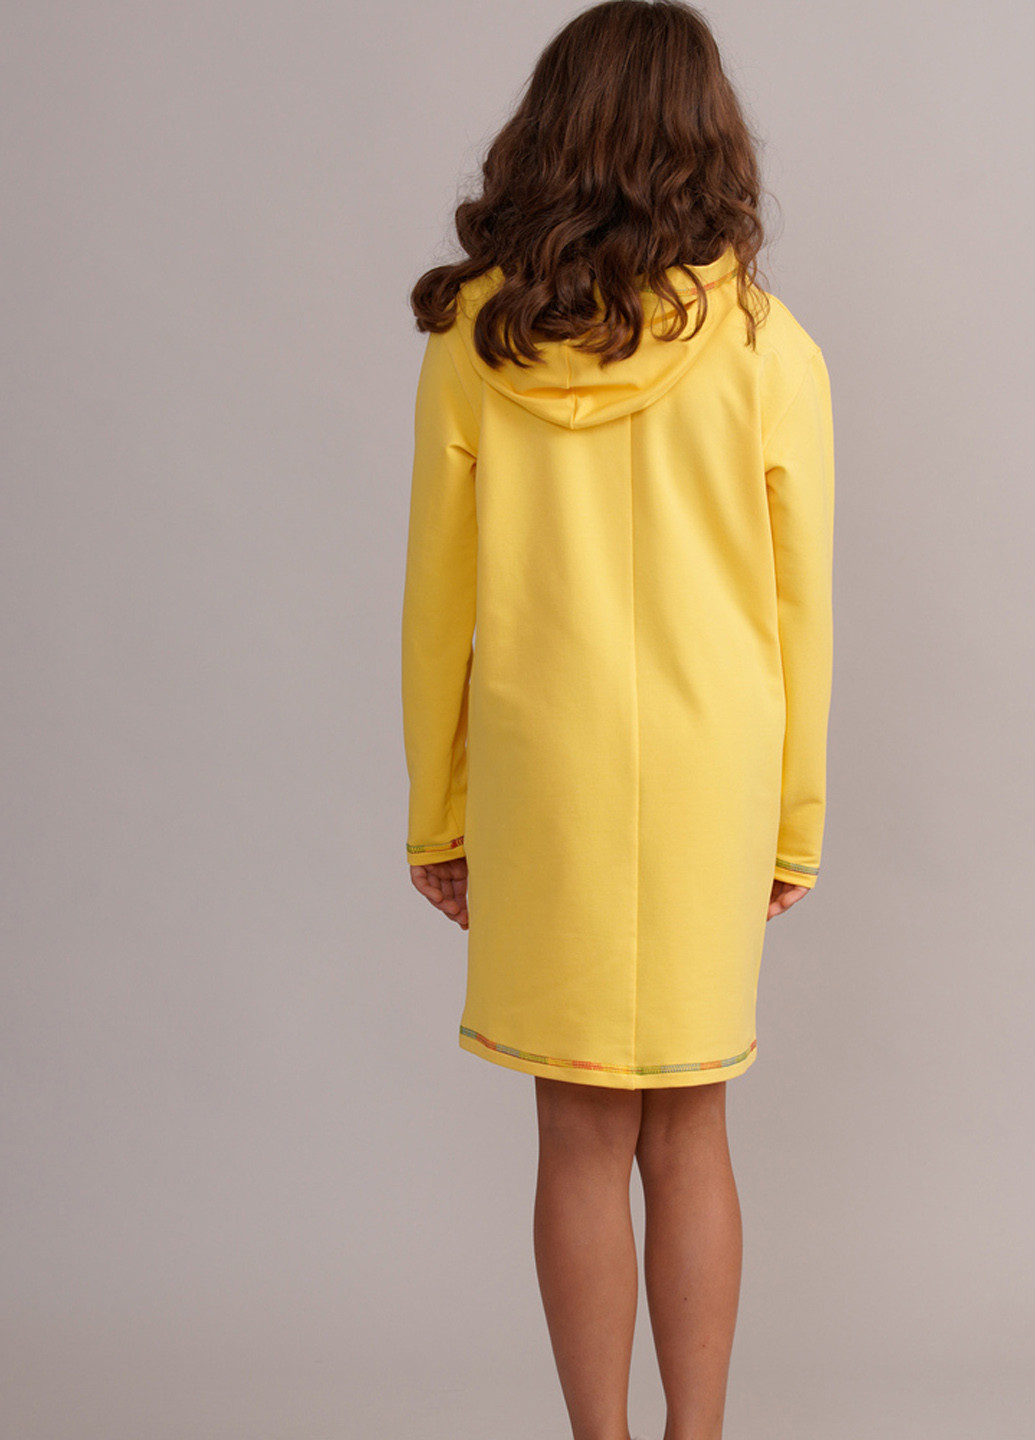 Жовтий кежуал плаття, сукня сукня-худі Promin. однотонна